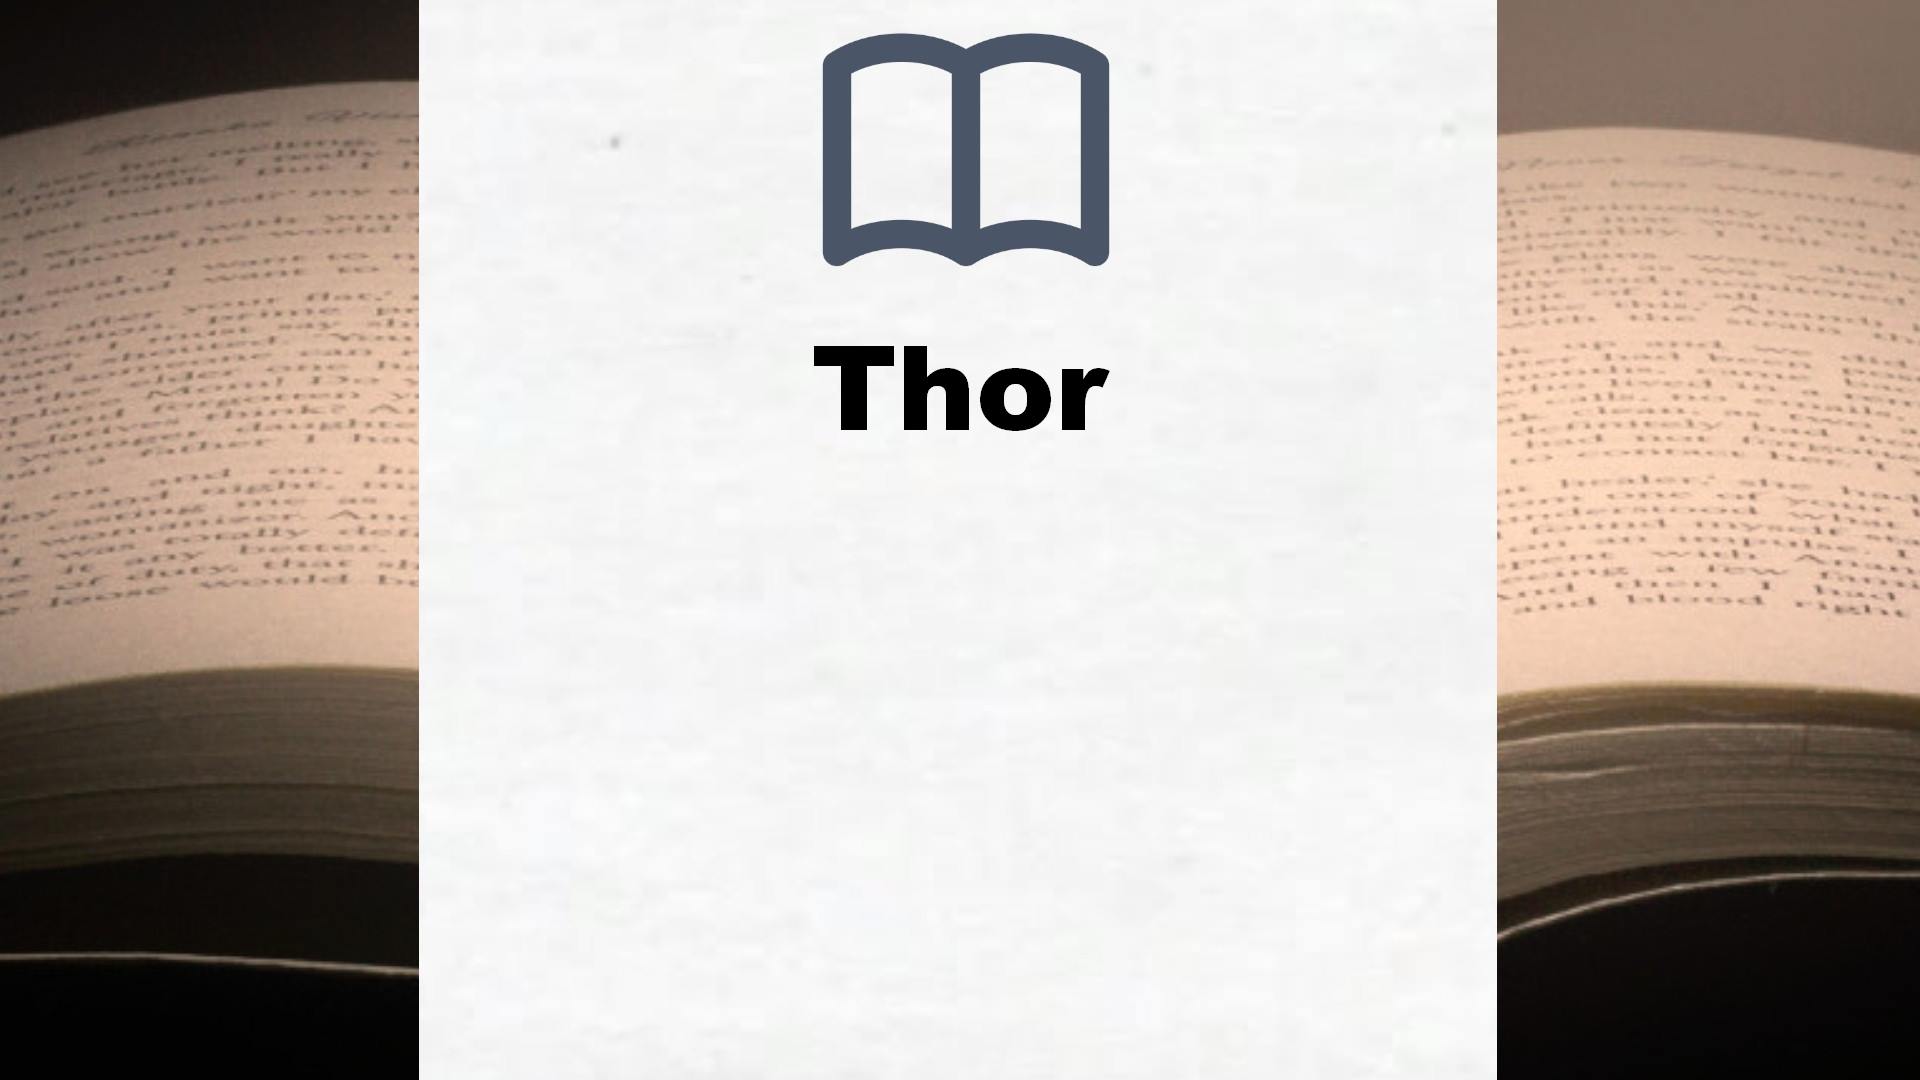 Bücher über Thor